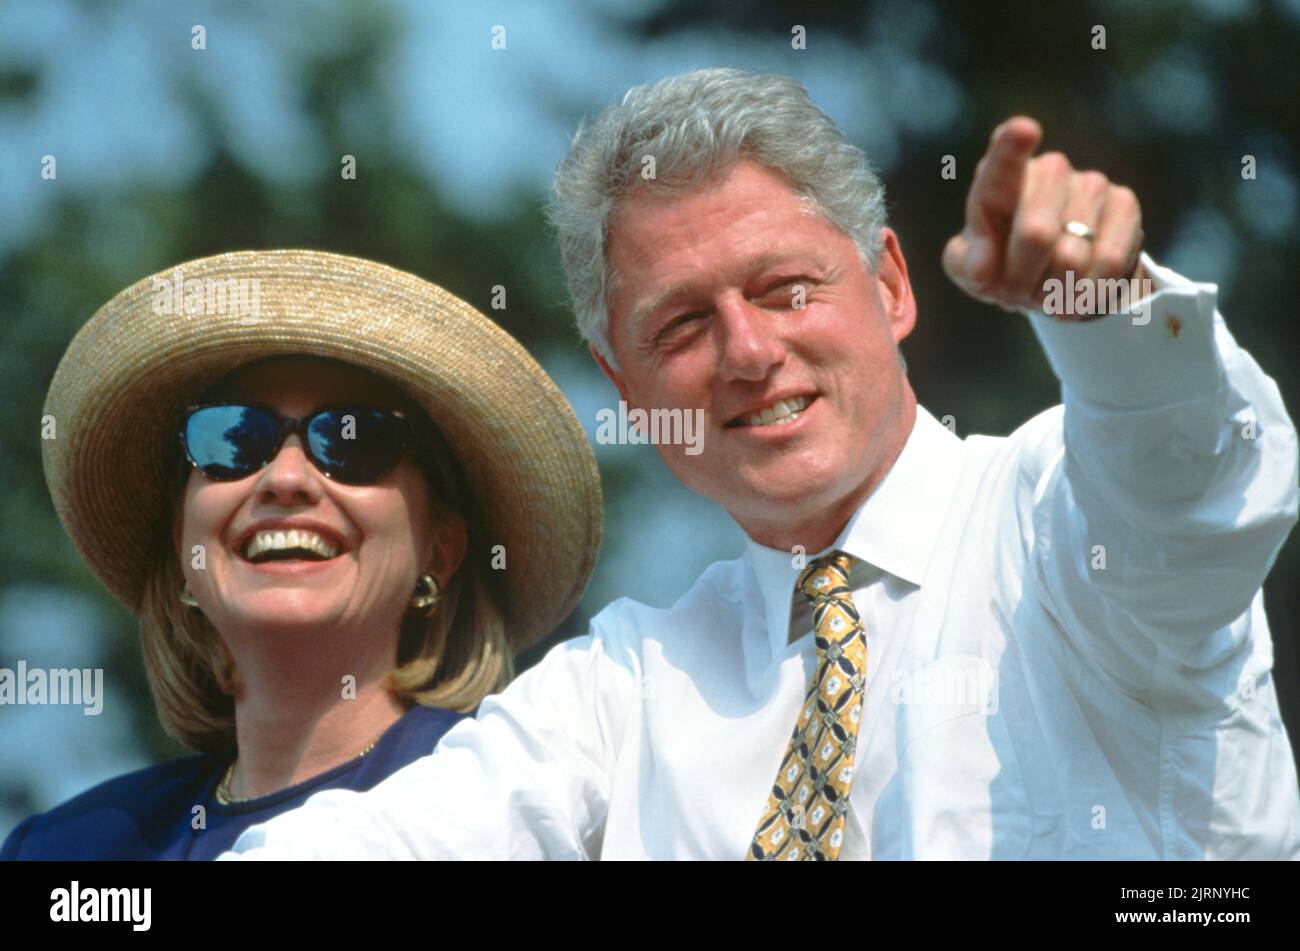 El presidente Bill Clinton y la primera dama Hillary Clinton durante un mitin de campaña en las afueras de la Biblioteca Pública de Stafford, 30 de agosto de 1996 en El Cairo, Illinois. Clinton se detuvo en la comunidad agrícola del sur de Illinois en su gira en autobús de campaña llamado el puente al siglo 21st. Foto de stock